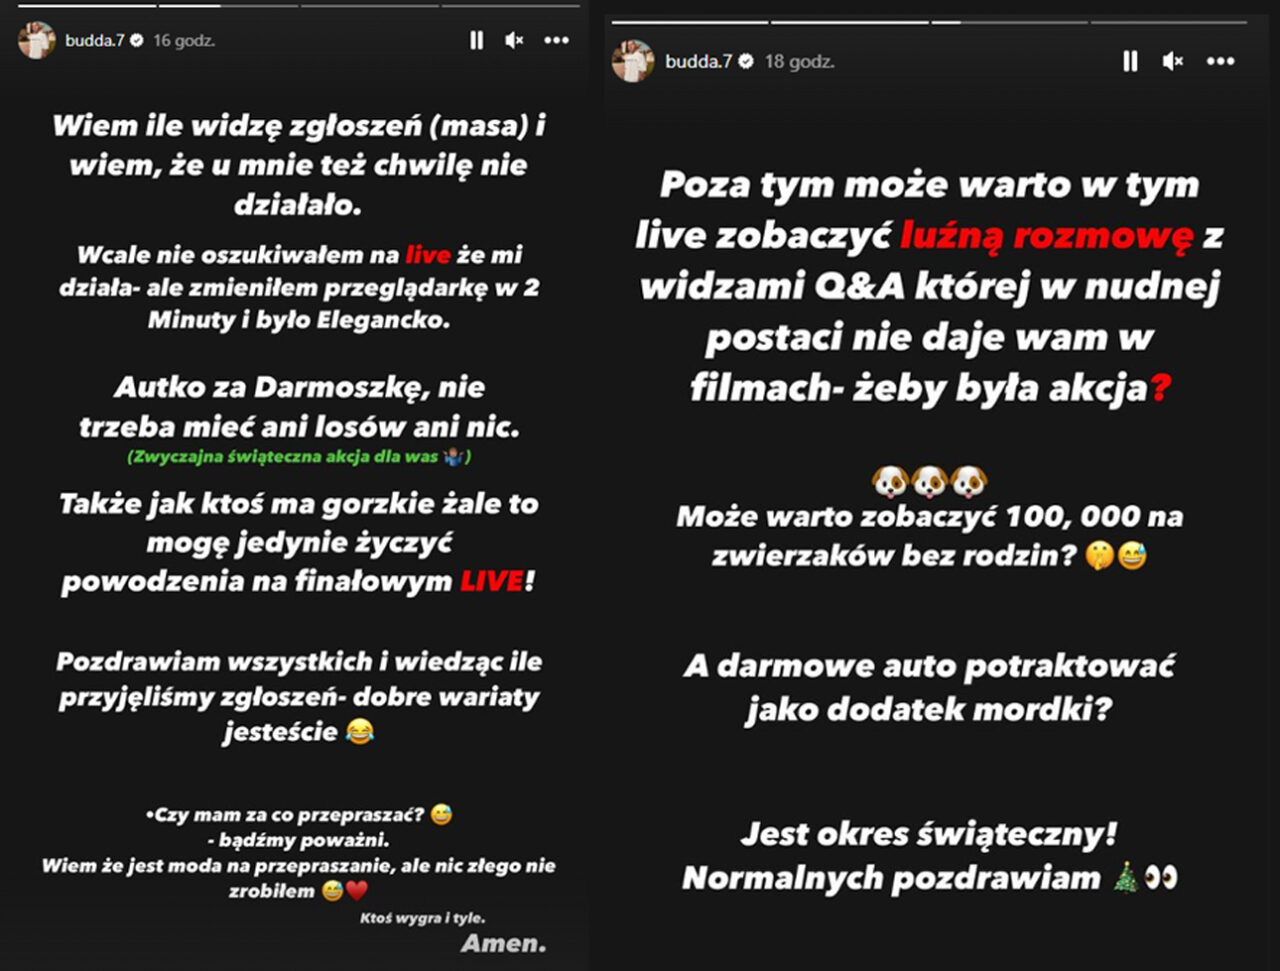 Zrzut ekranu dwóch postów na Instagramie zamieszczonych przez użytkownika "budda.7", zawierających tekst w języku polskim z komunikacją o problemach technicznych i zaproszeniem do uczestnictwa w konkursie oraz rozmowie na żywo.